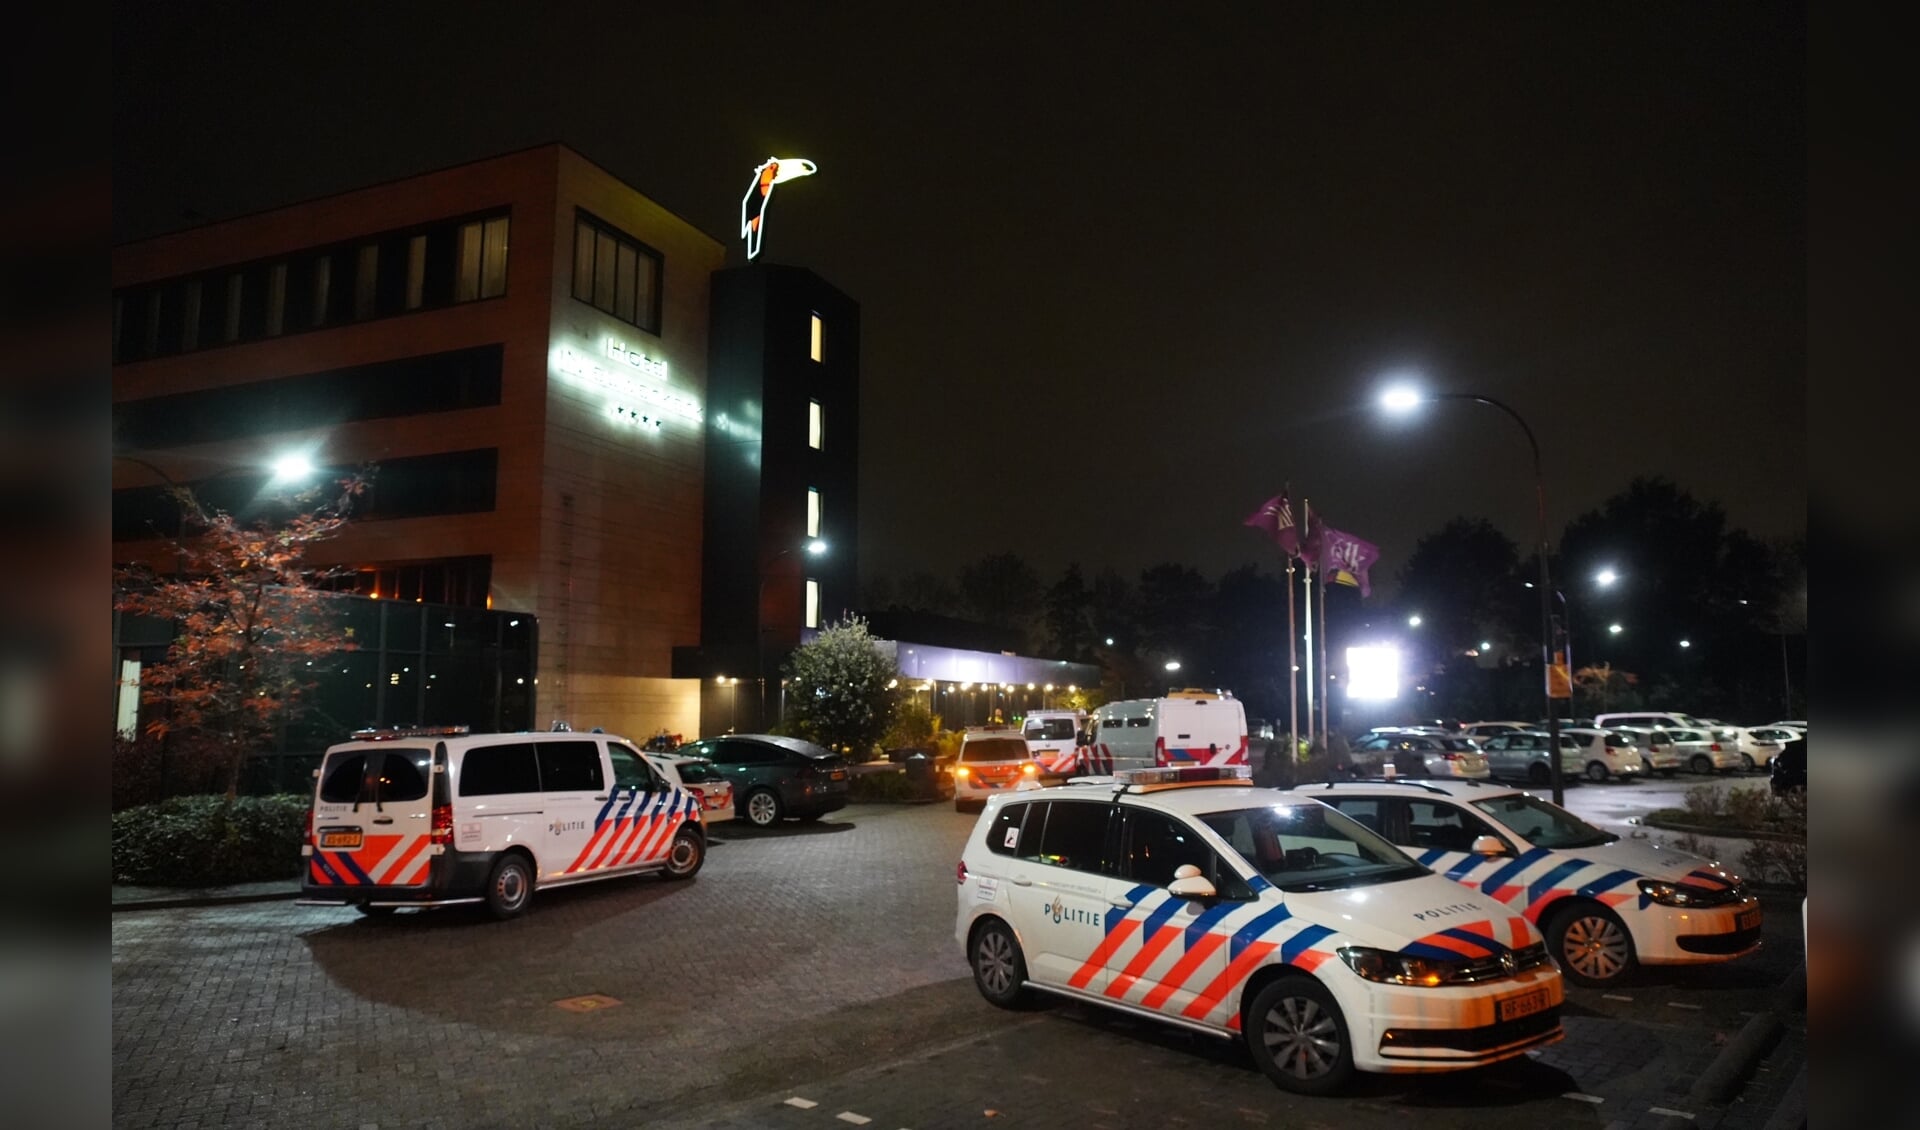 Twee personen uit Frankrijk zijn aangehouden na een melding bedreiging en mishandeling in het Van der Valk-hotel in Nieuwerkerk.